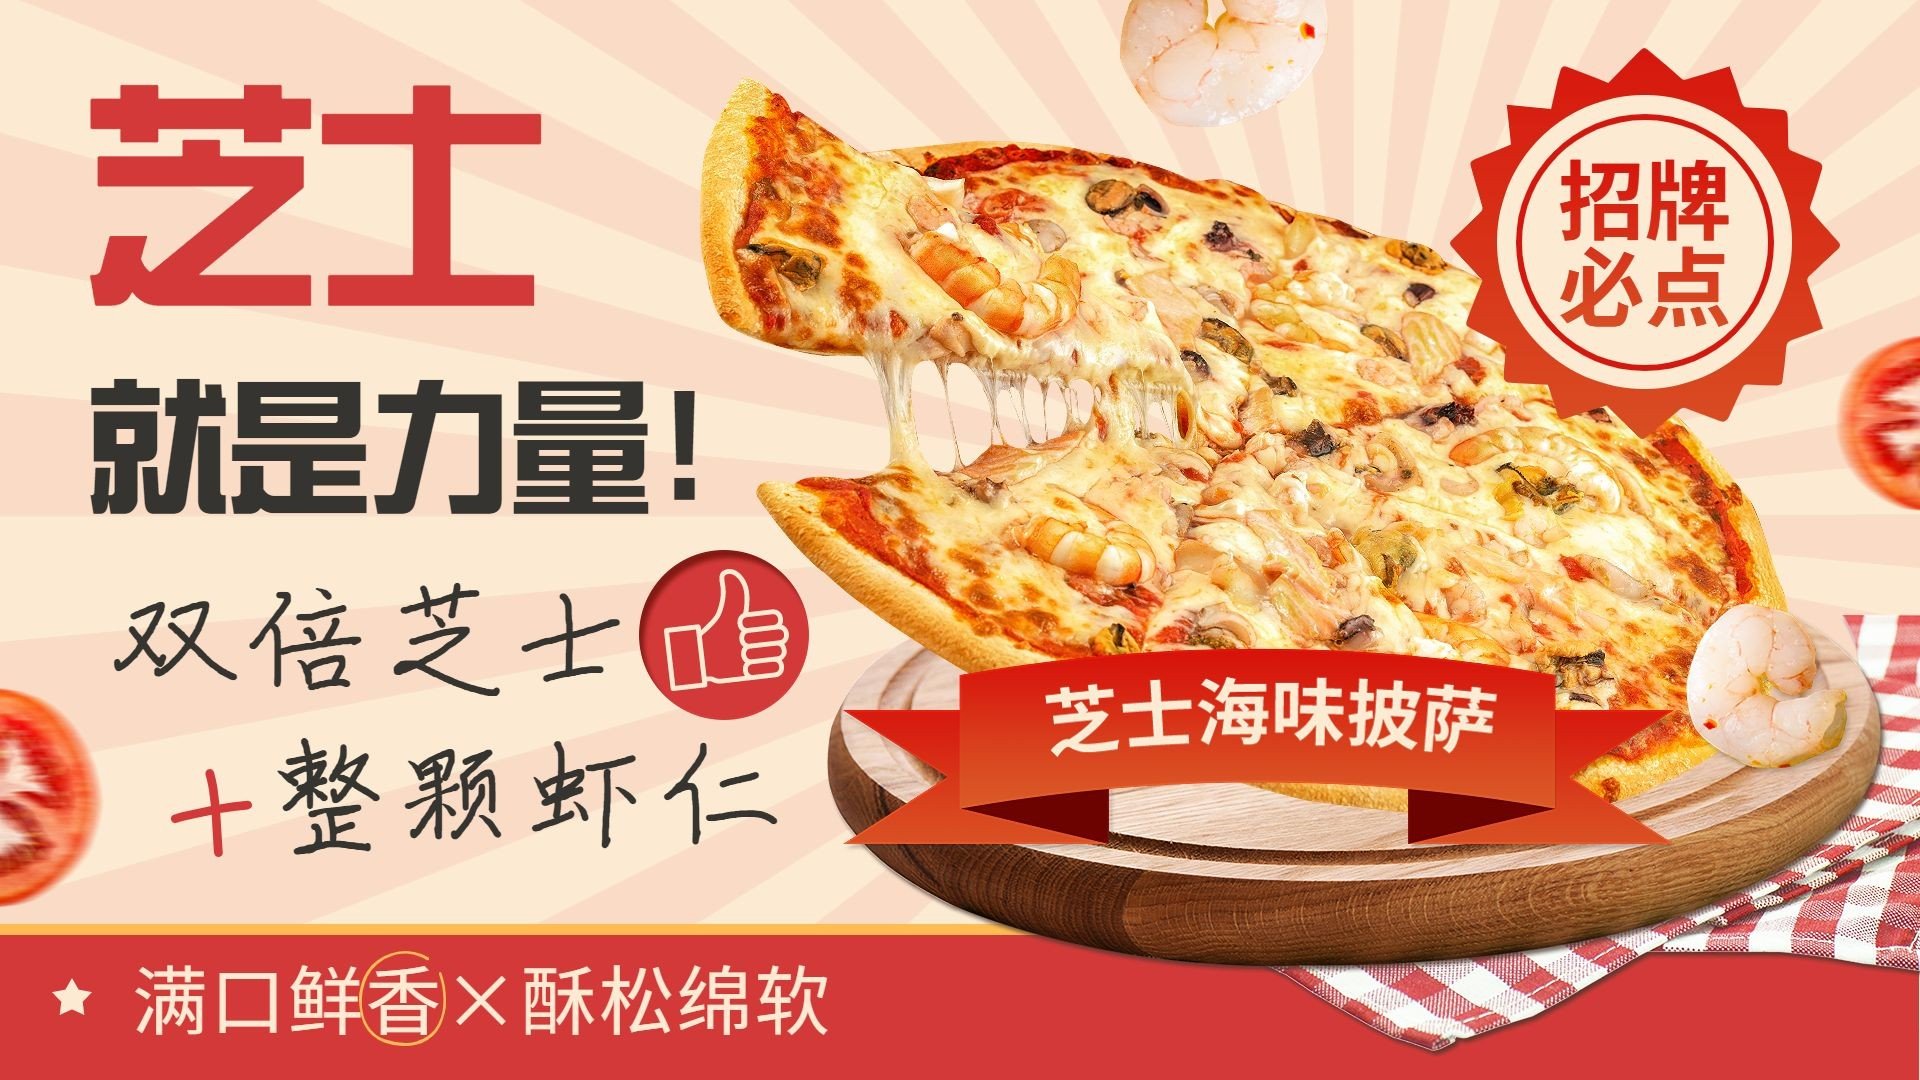 餐饮披萨西餐产品营销横版海报banner预览效果